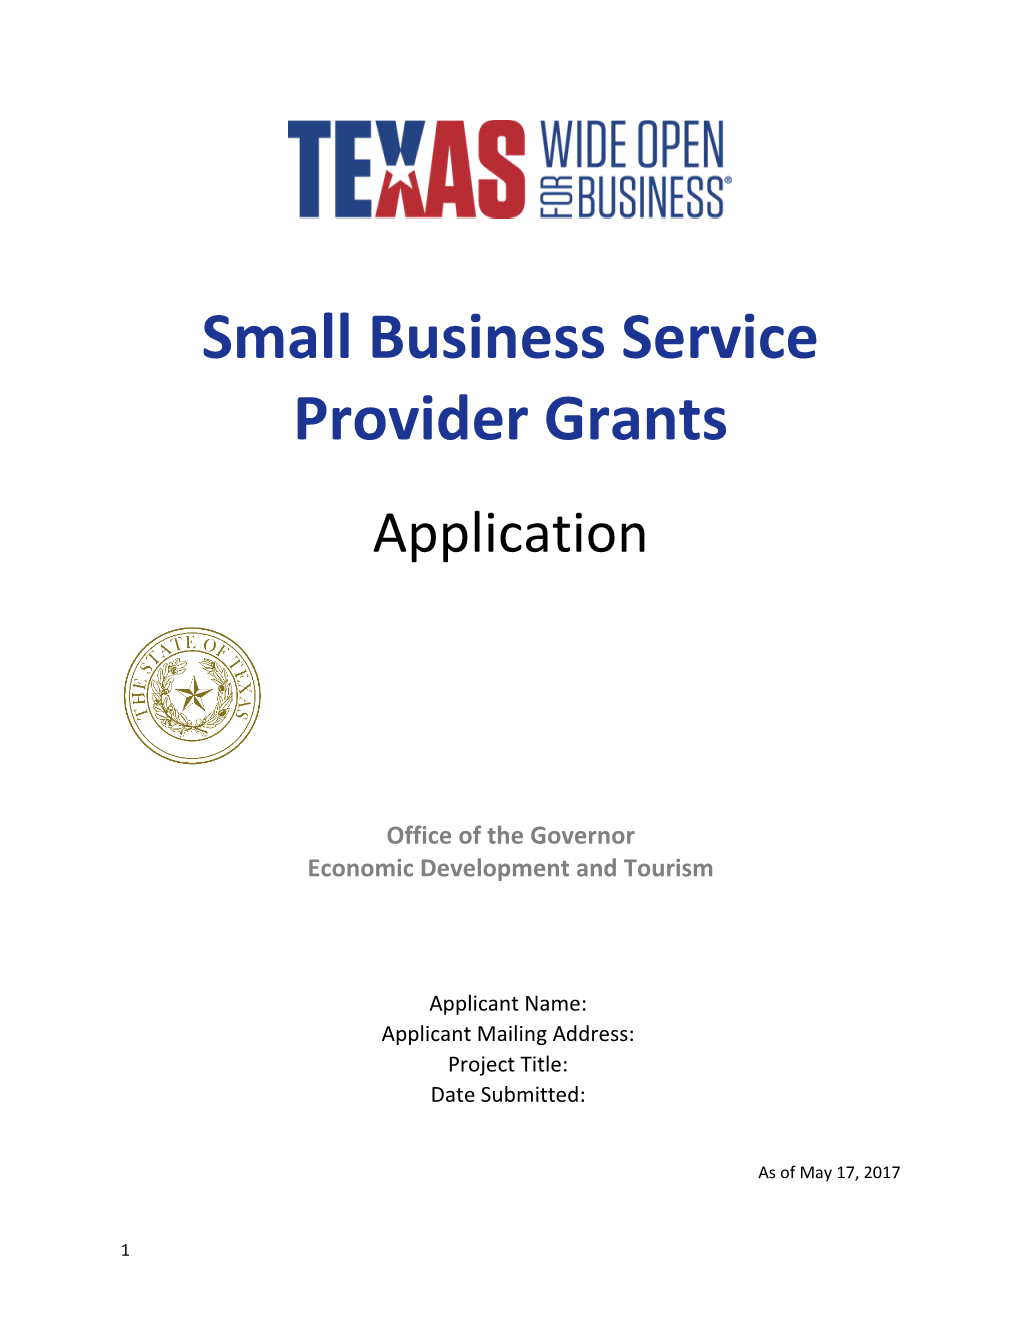 Small Business Service Provider Grants